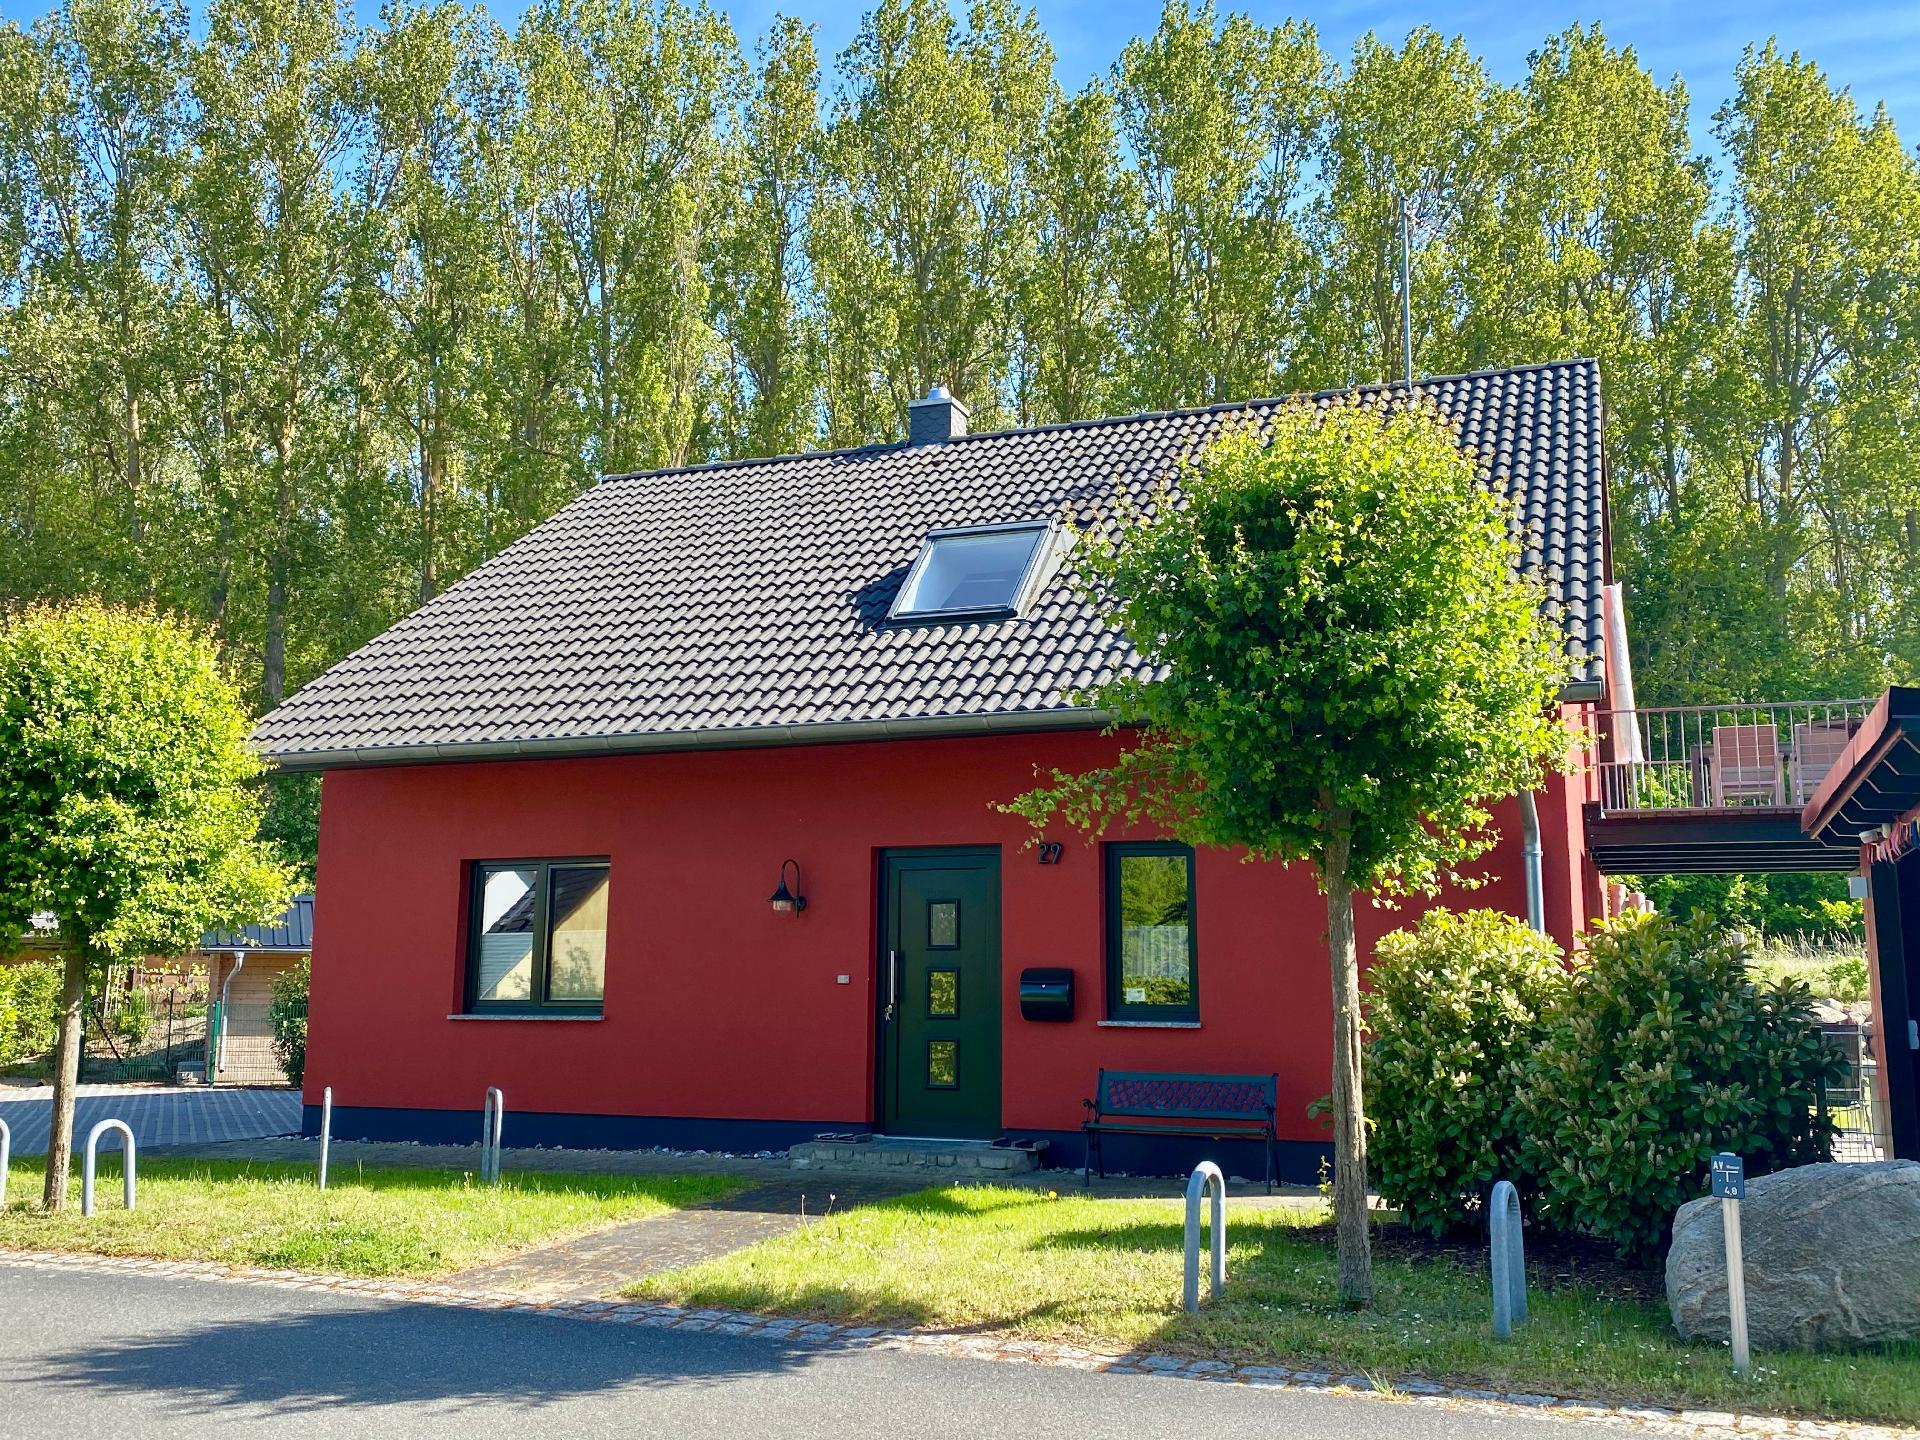 Ferienwohnung für 4 Personen ca. 80 m² i Ferienhaus in Deutschland